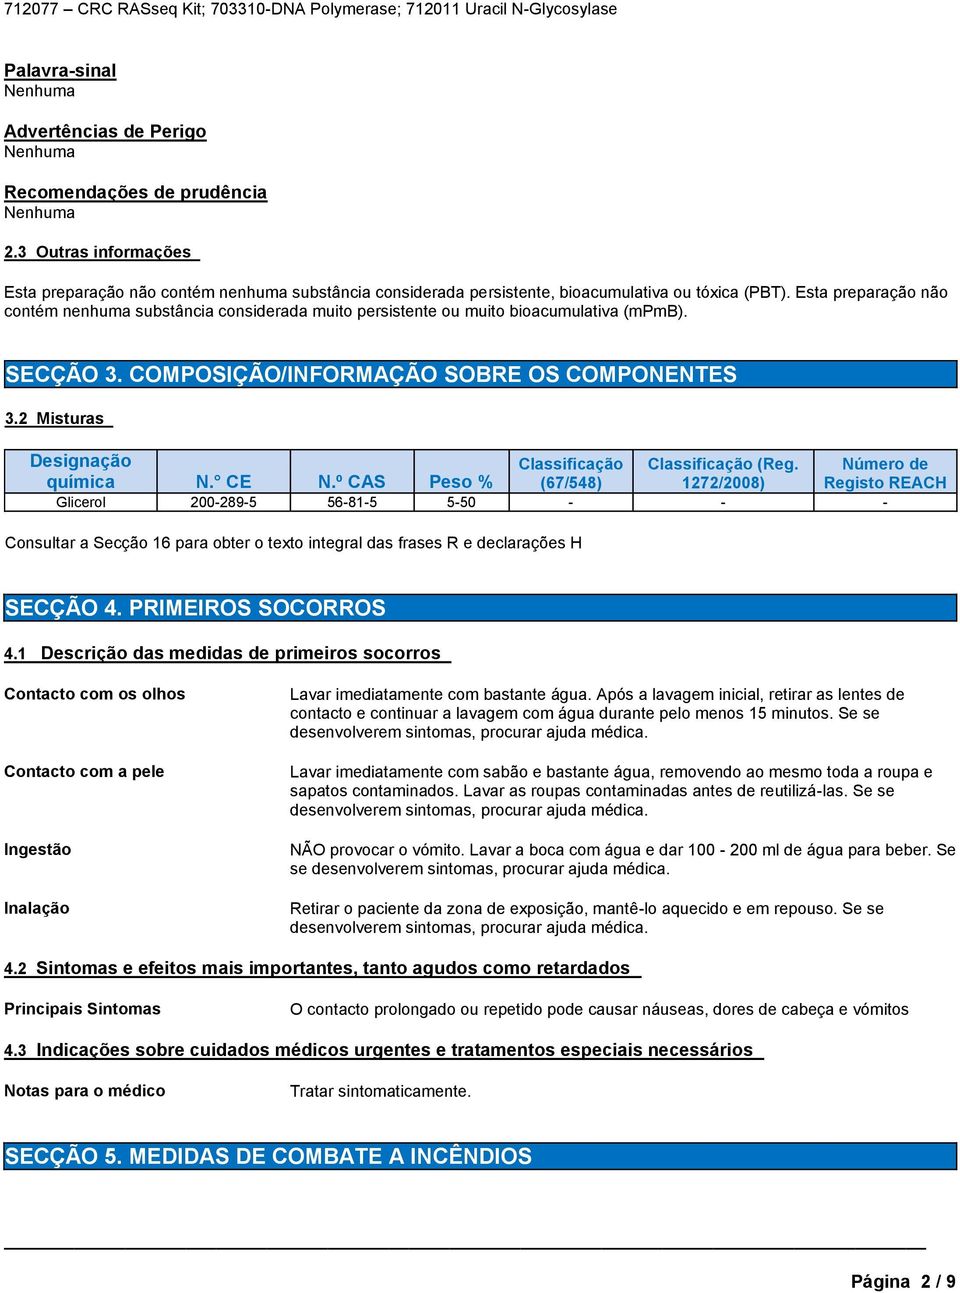 2 Misturas Designação Classificação Classificação (Reg. Número de química N. CE N.